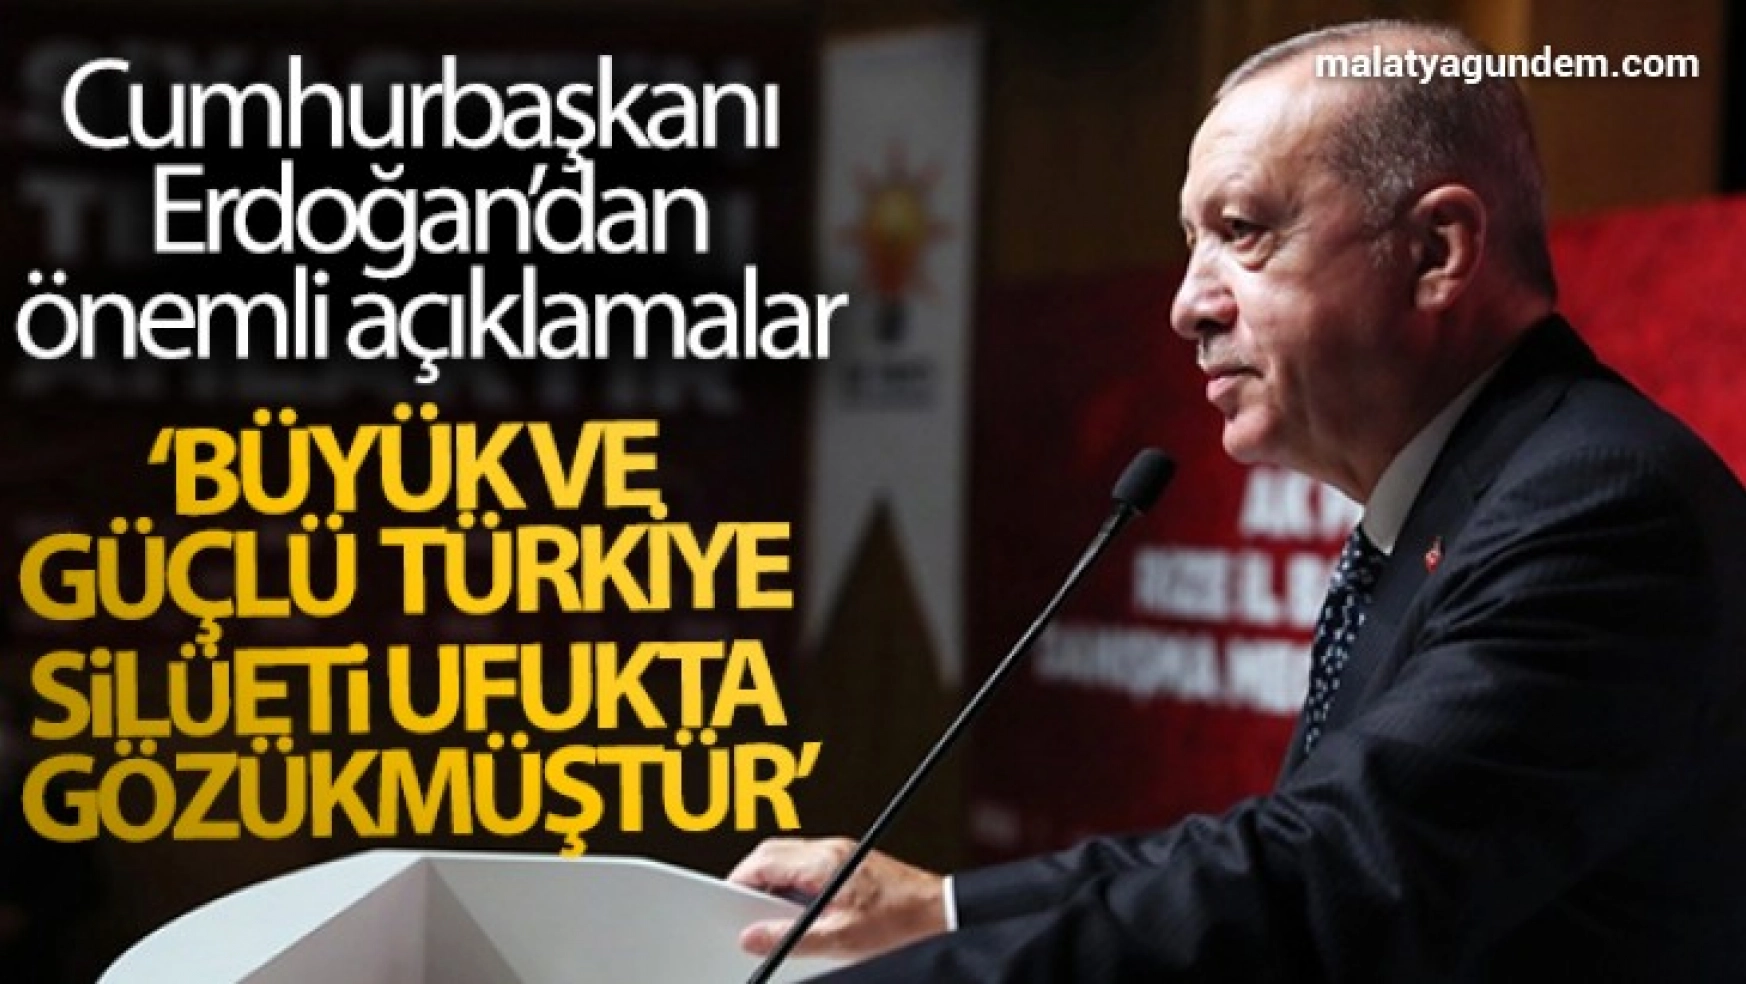 Cumhurbaşkanı Erdoğan: 'Büyük ve güçlü Türkiye silüeti ufukta gözükmüştür'